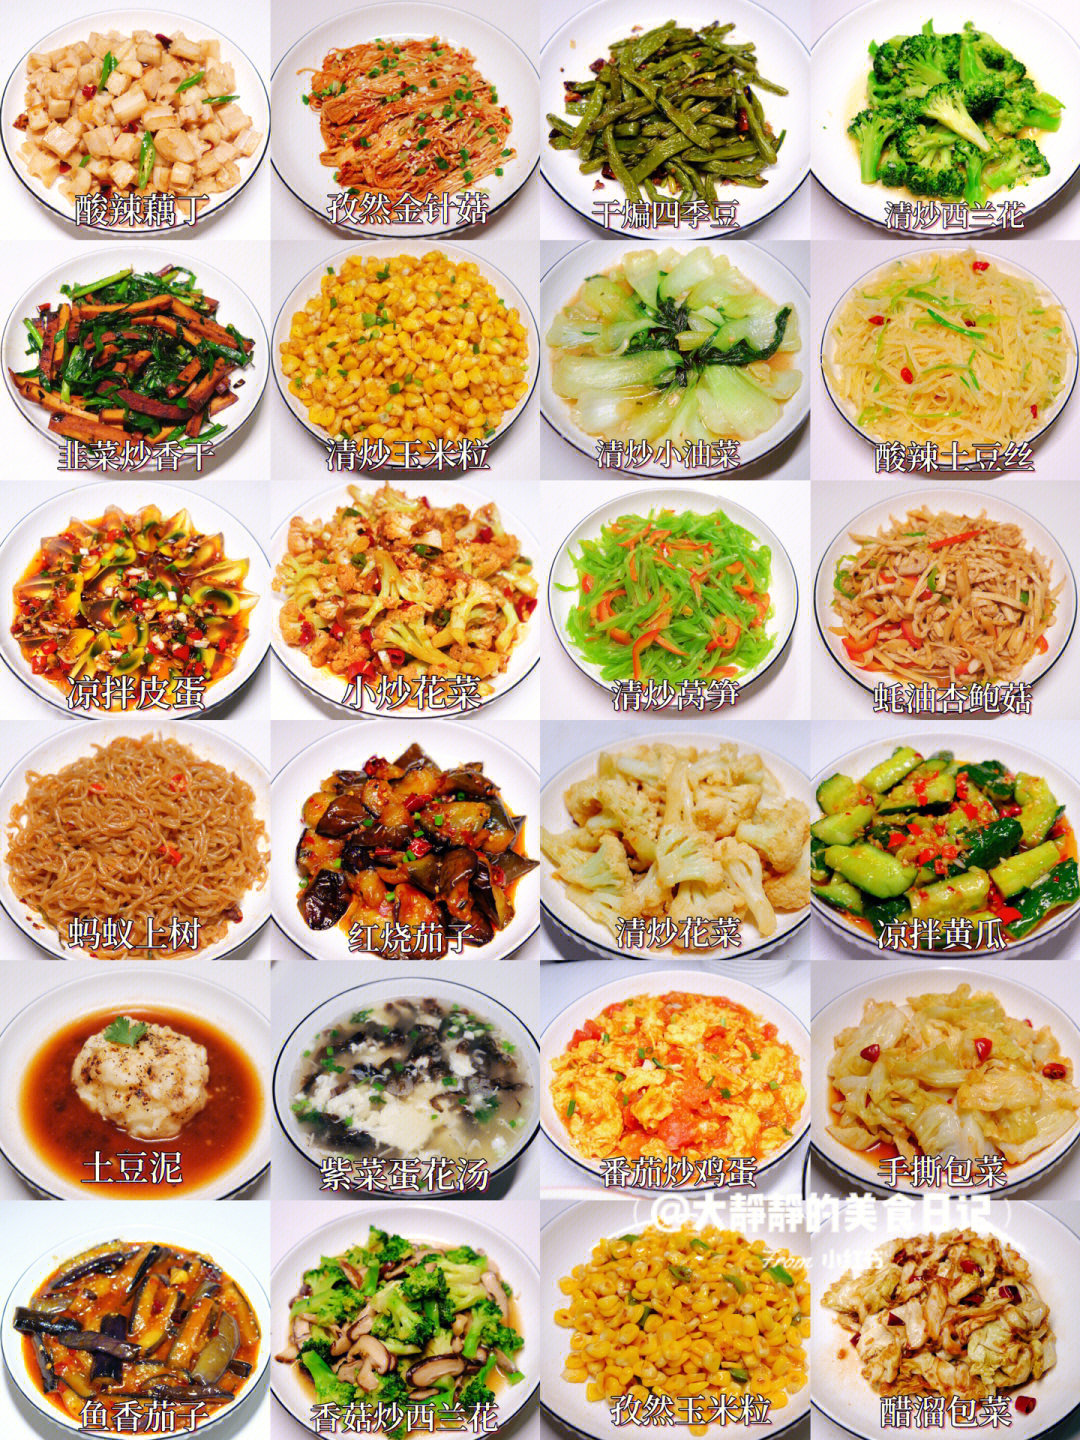 50款素菜菜谱素食图片